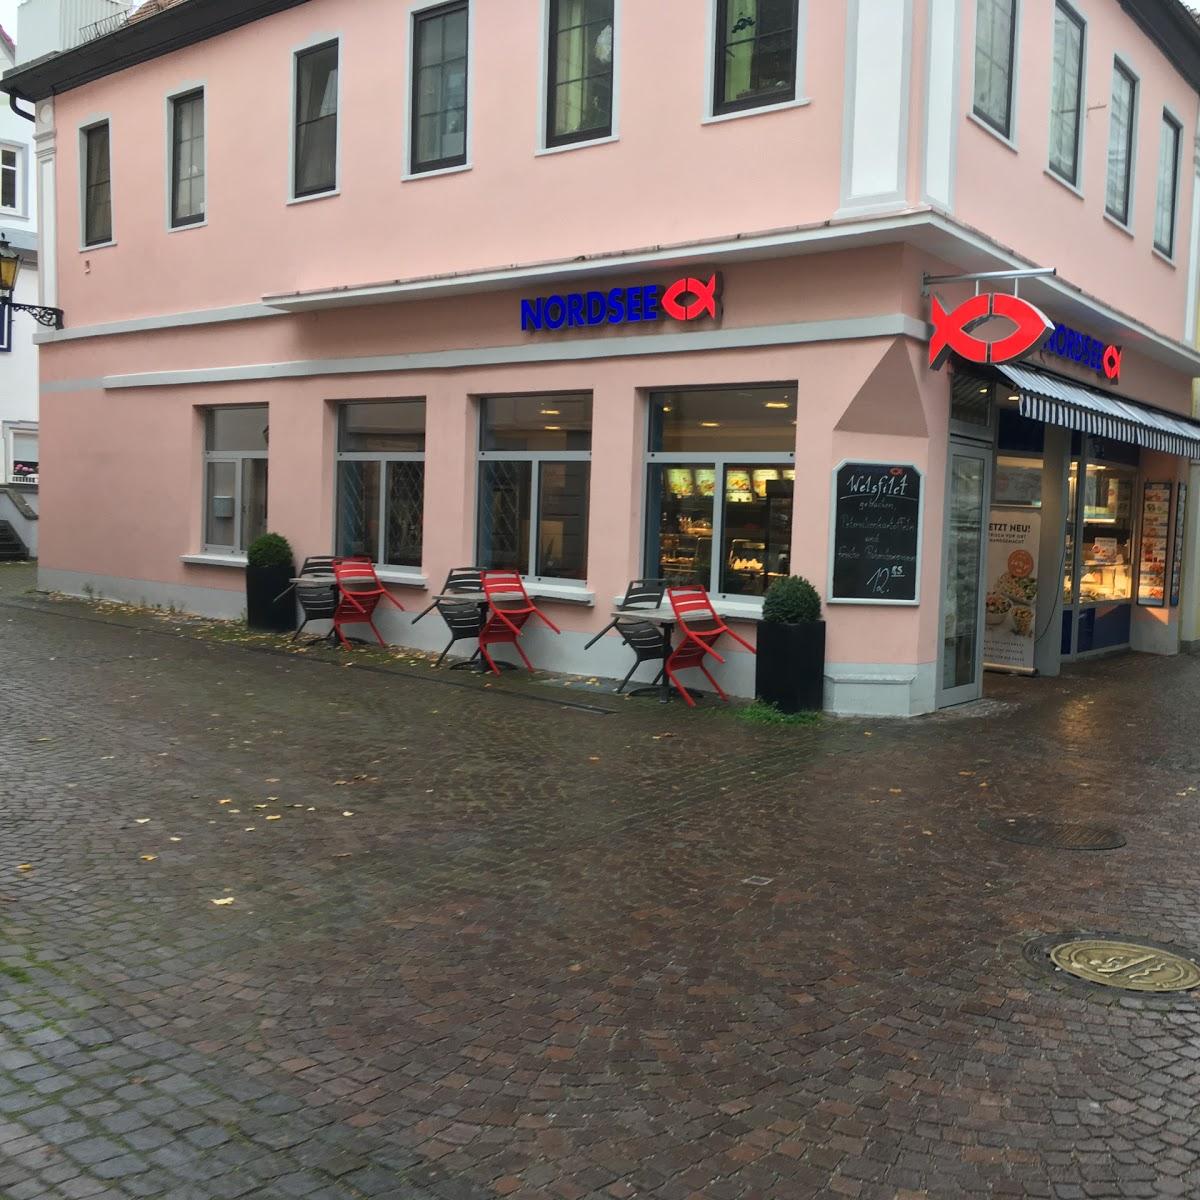 Restaurant "NORDSEE  Kirchstraße" in Bad Mergentheim